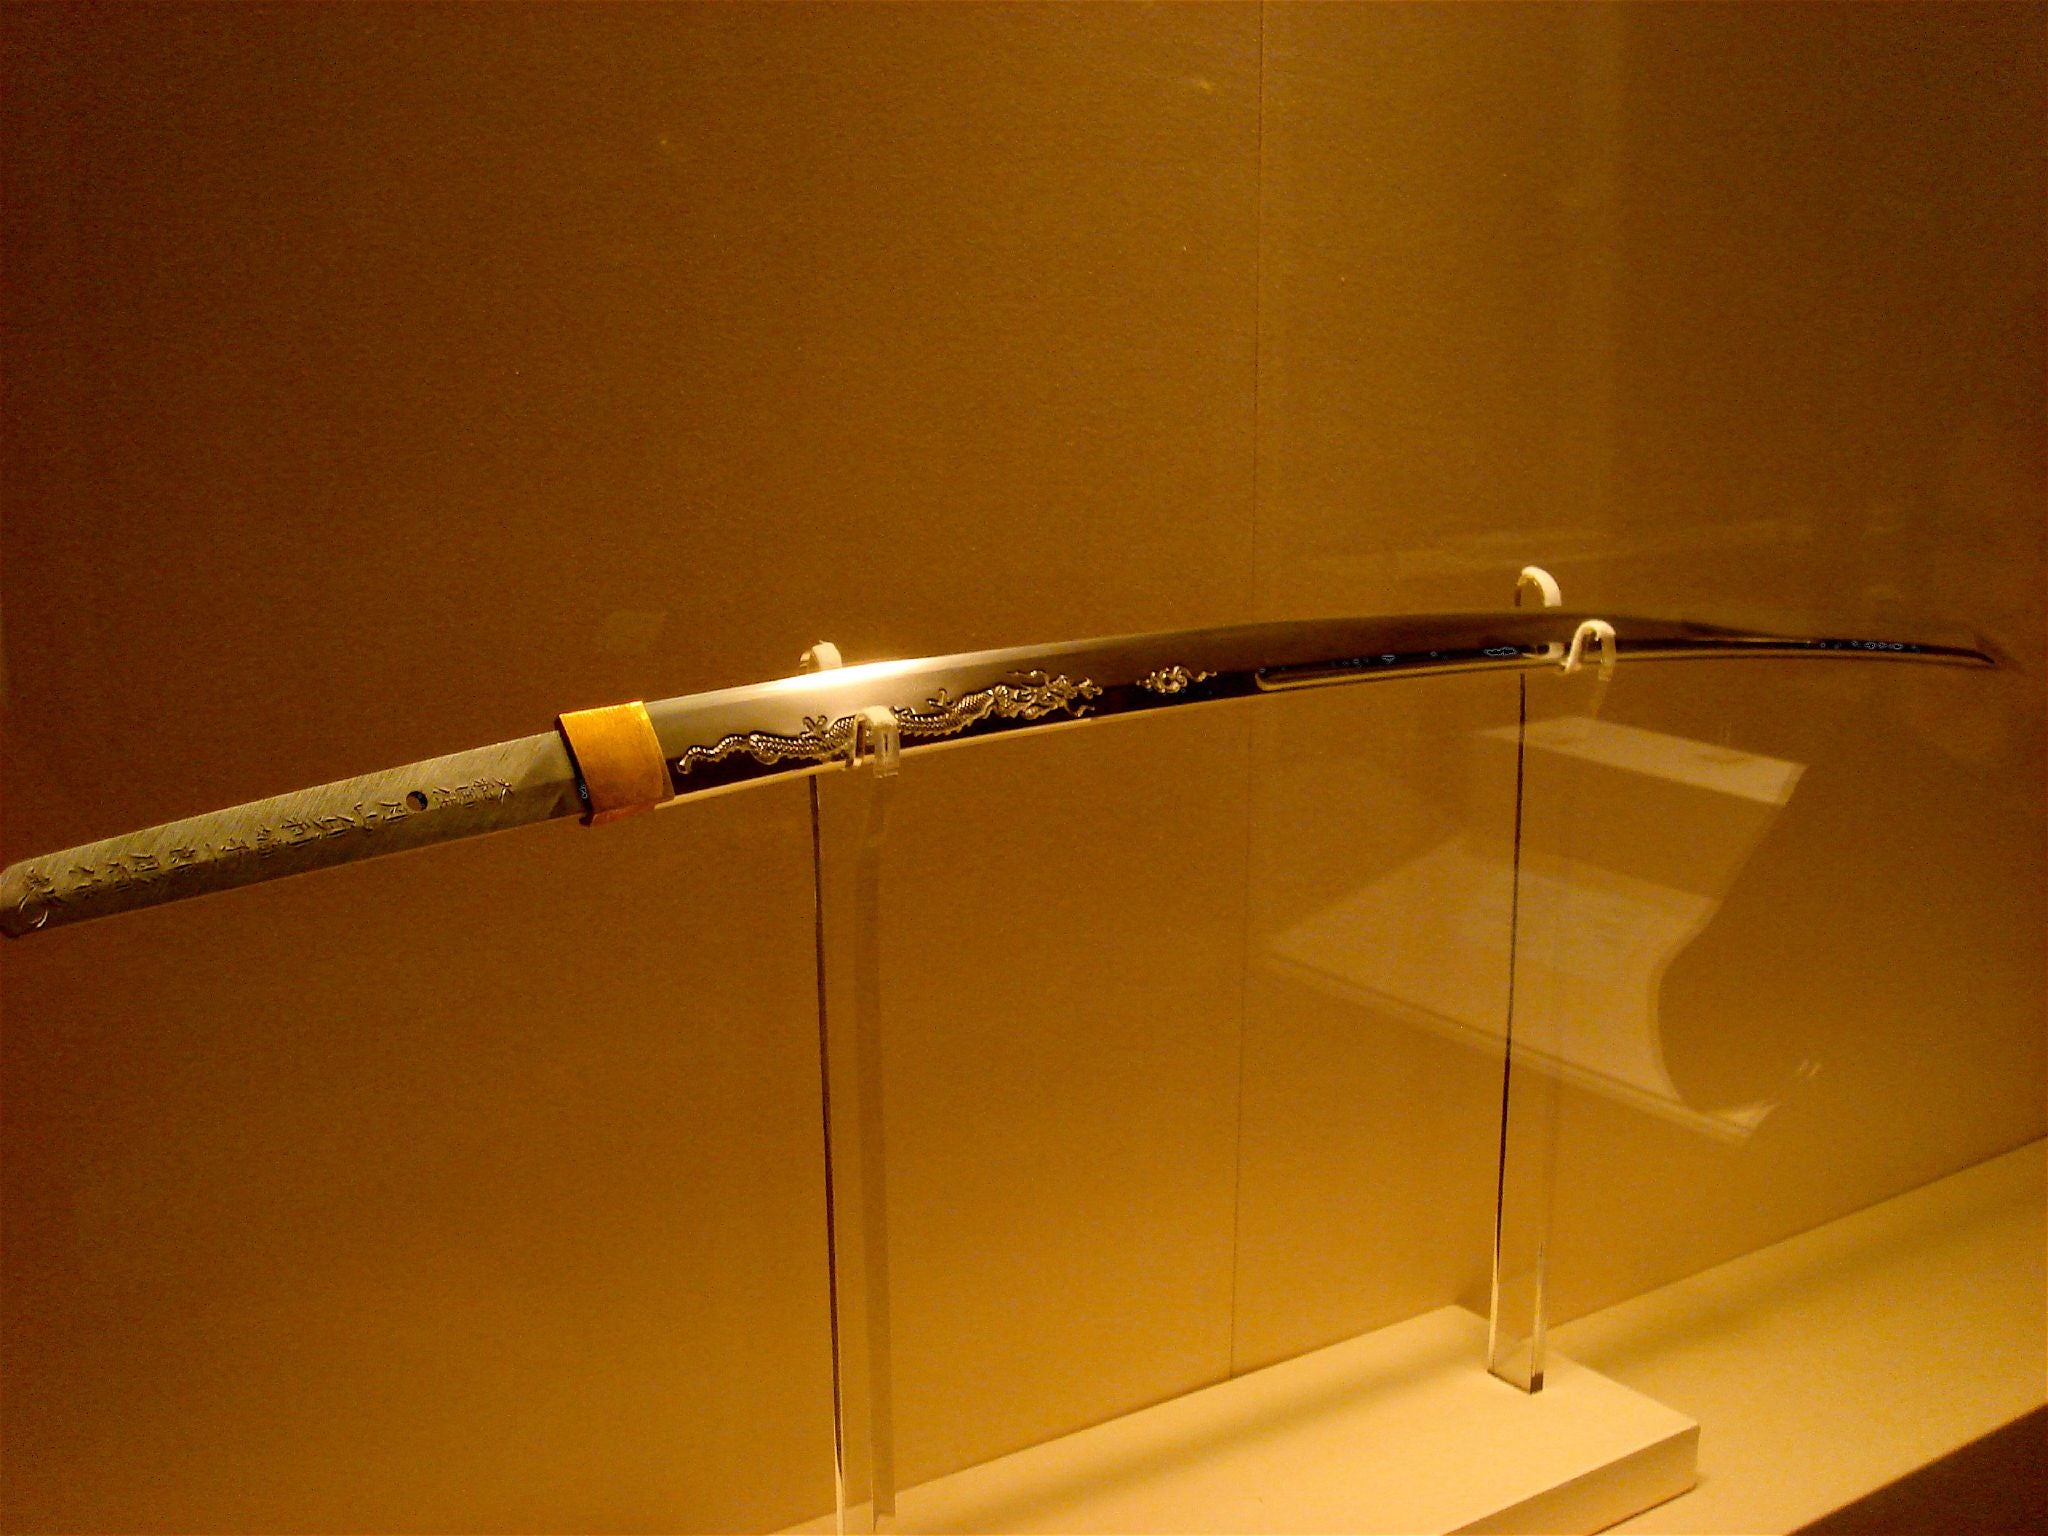 Comment les invasions mongoles influencent la fabrication d'épées japonaises